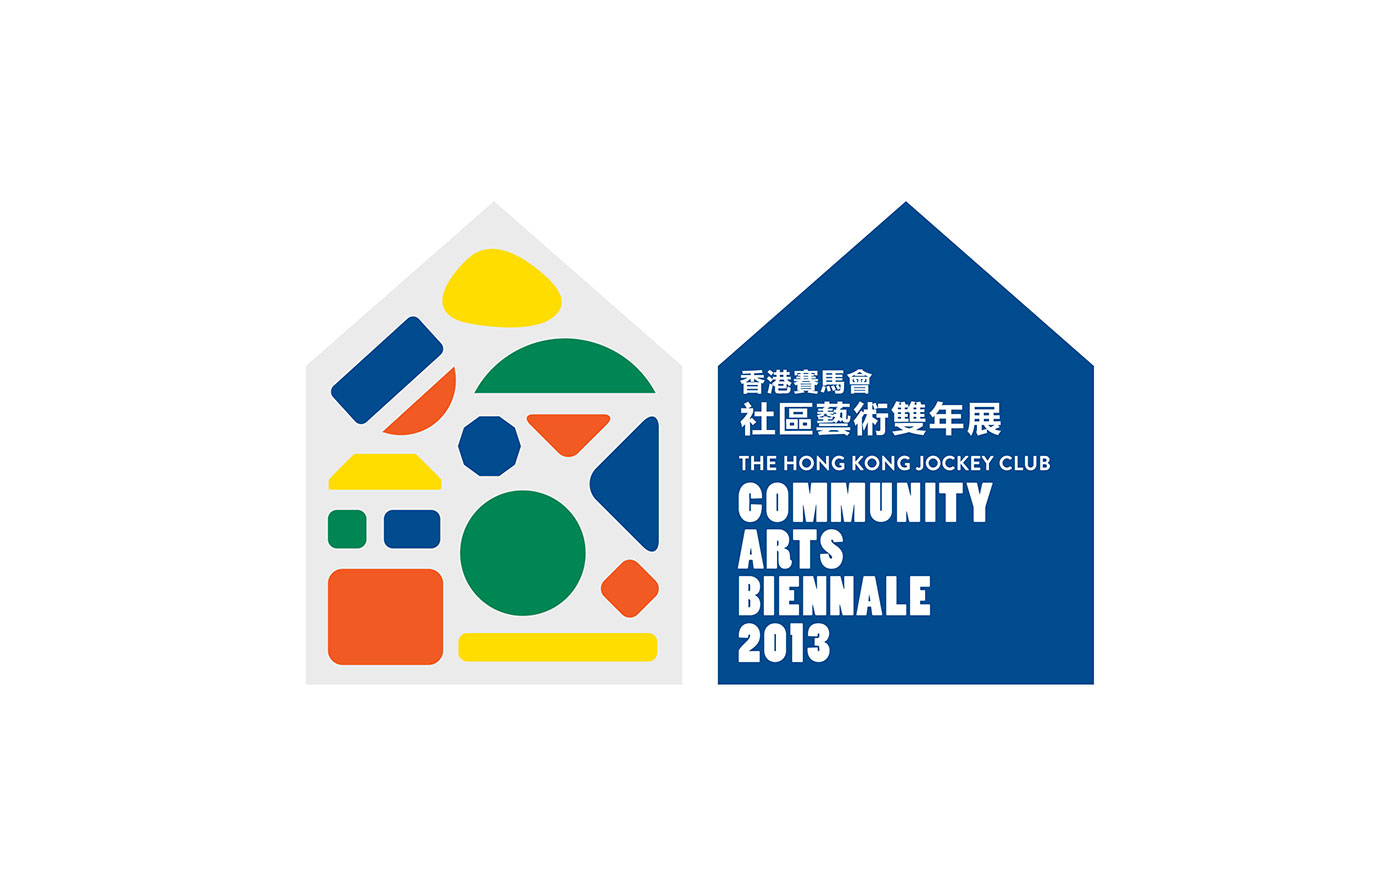 Hong Kong Jockey Club Community Arts Biennale 2013